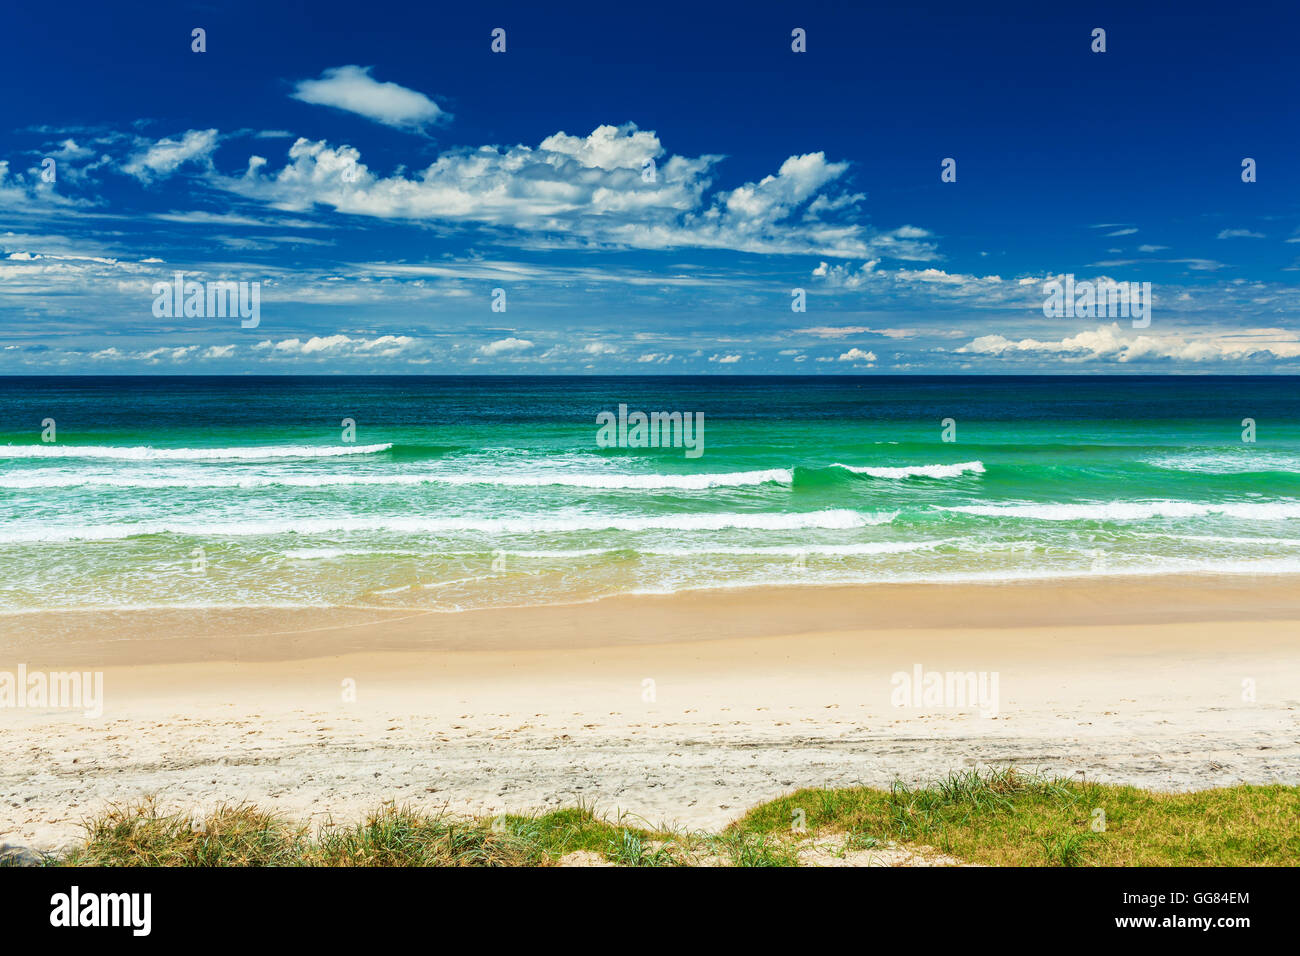 Plage vide avec piste en herbe et de vagues déferlantes, Gold Coast, Australie Banque D'Images